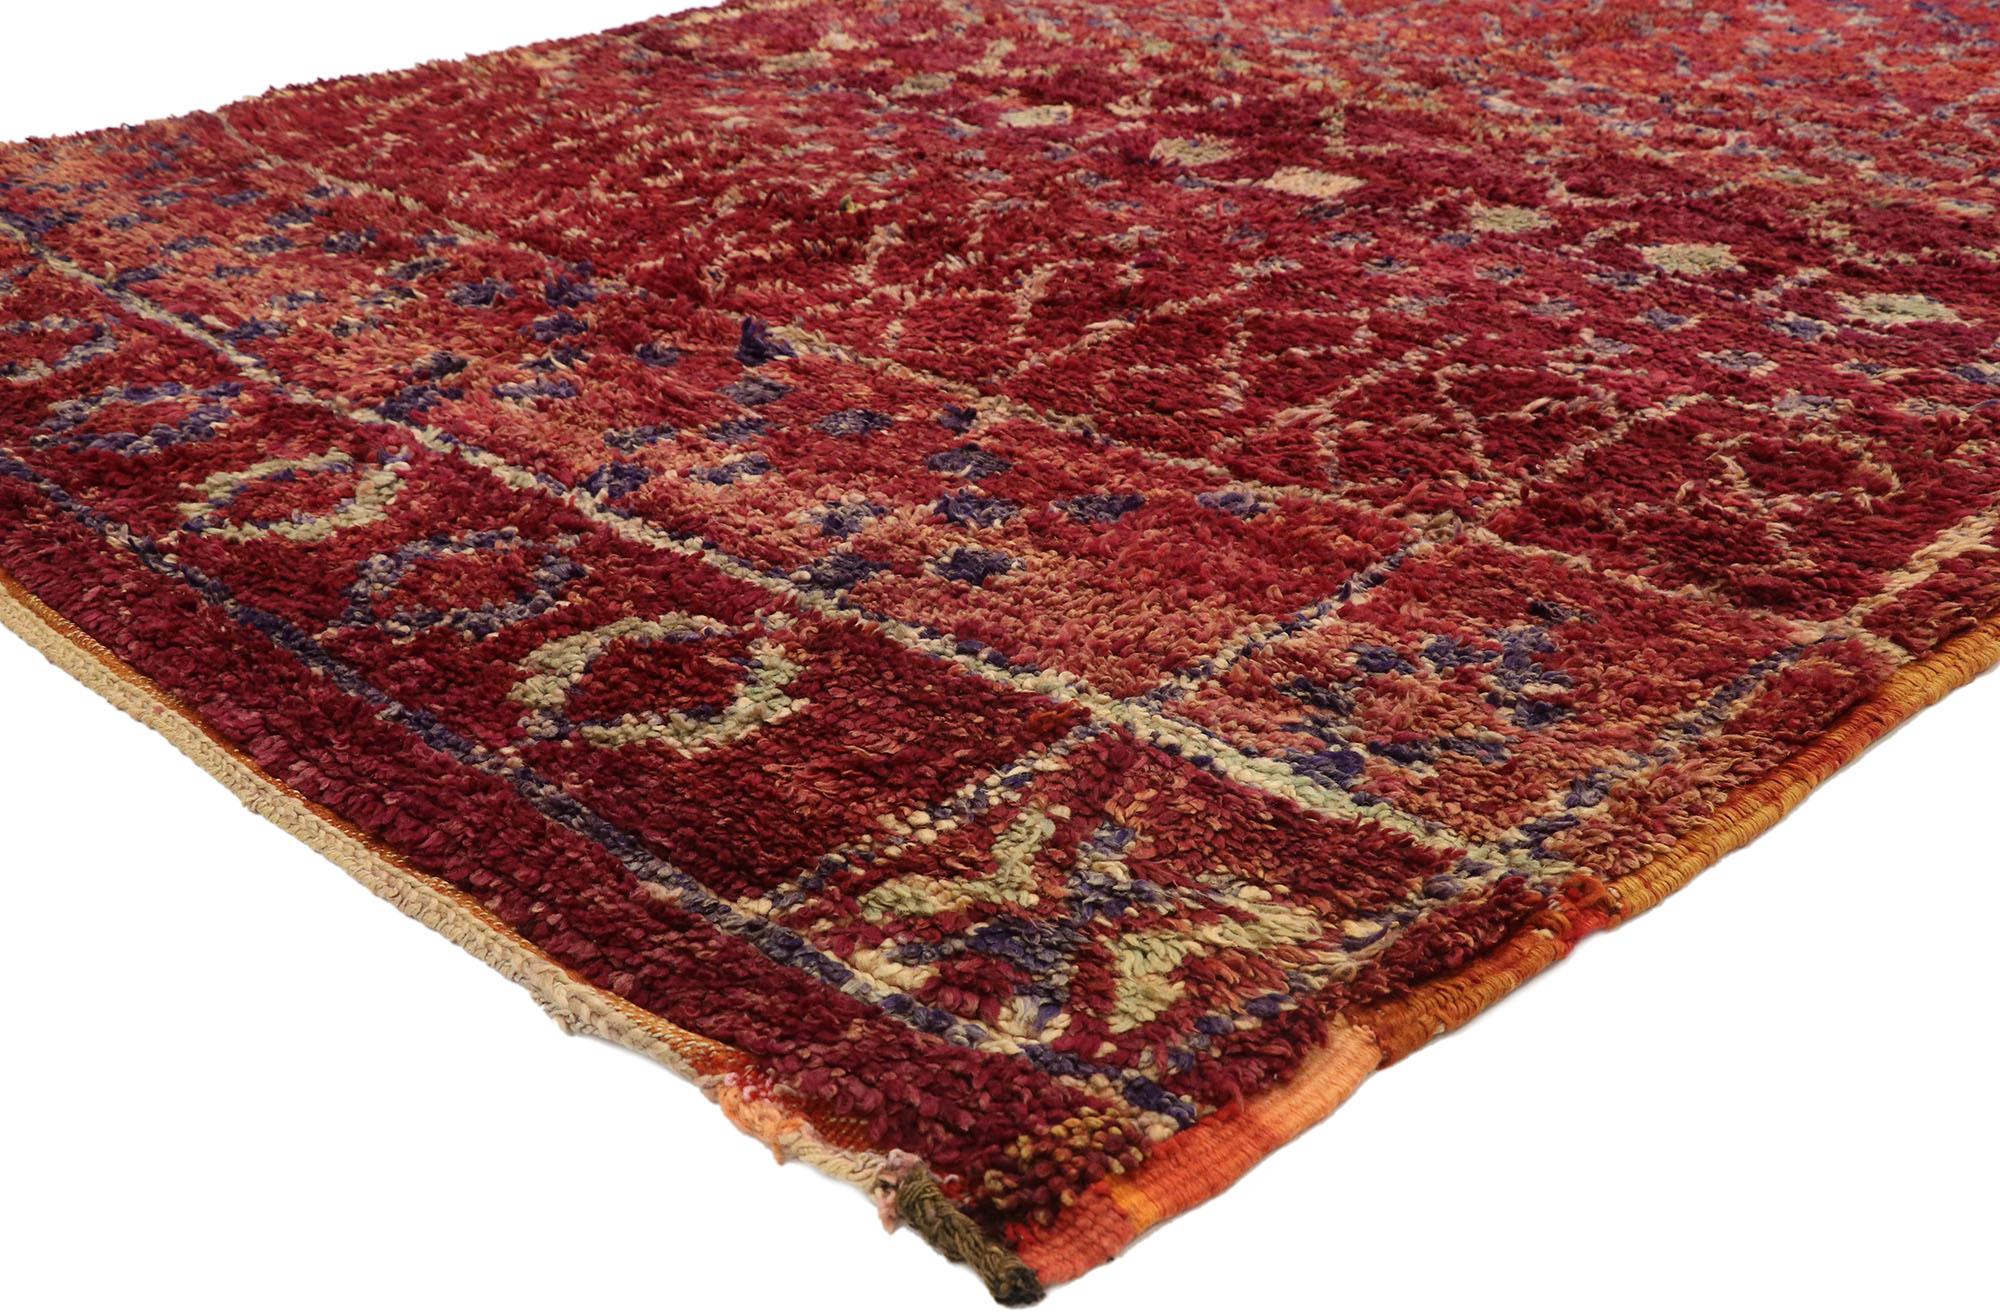 21051, tapis marocain berbère vintage avec Postmodern boho chic et Memphis Style 06'11 x 10'00. Ce tapis marocain berbère vintage en laine noué à la main présente un motif compartimenté qui s'étend sur un champ abrasé de couleur baie et bordeaux.